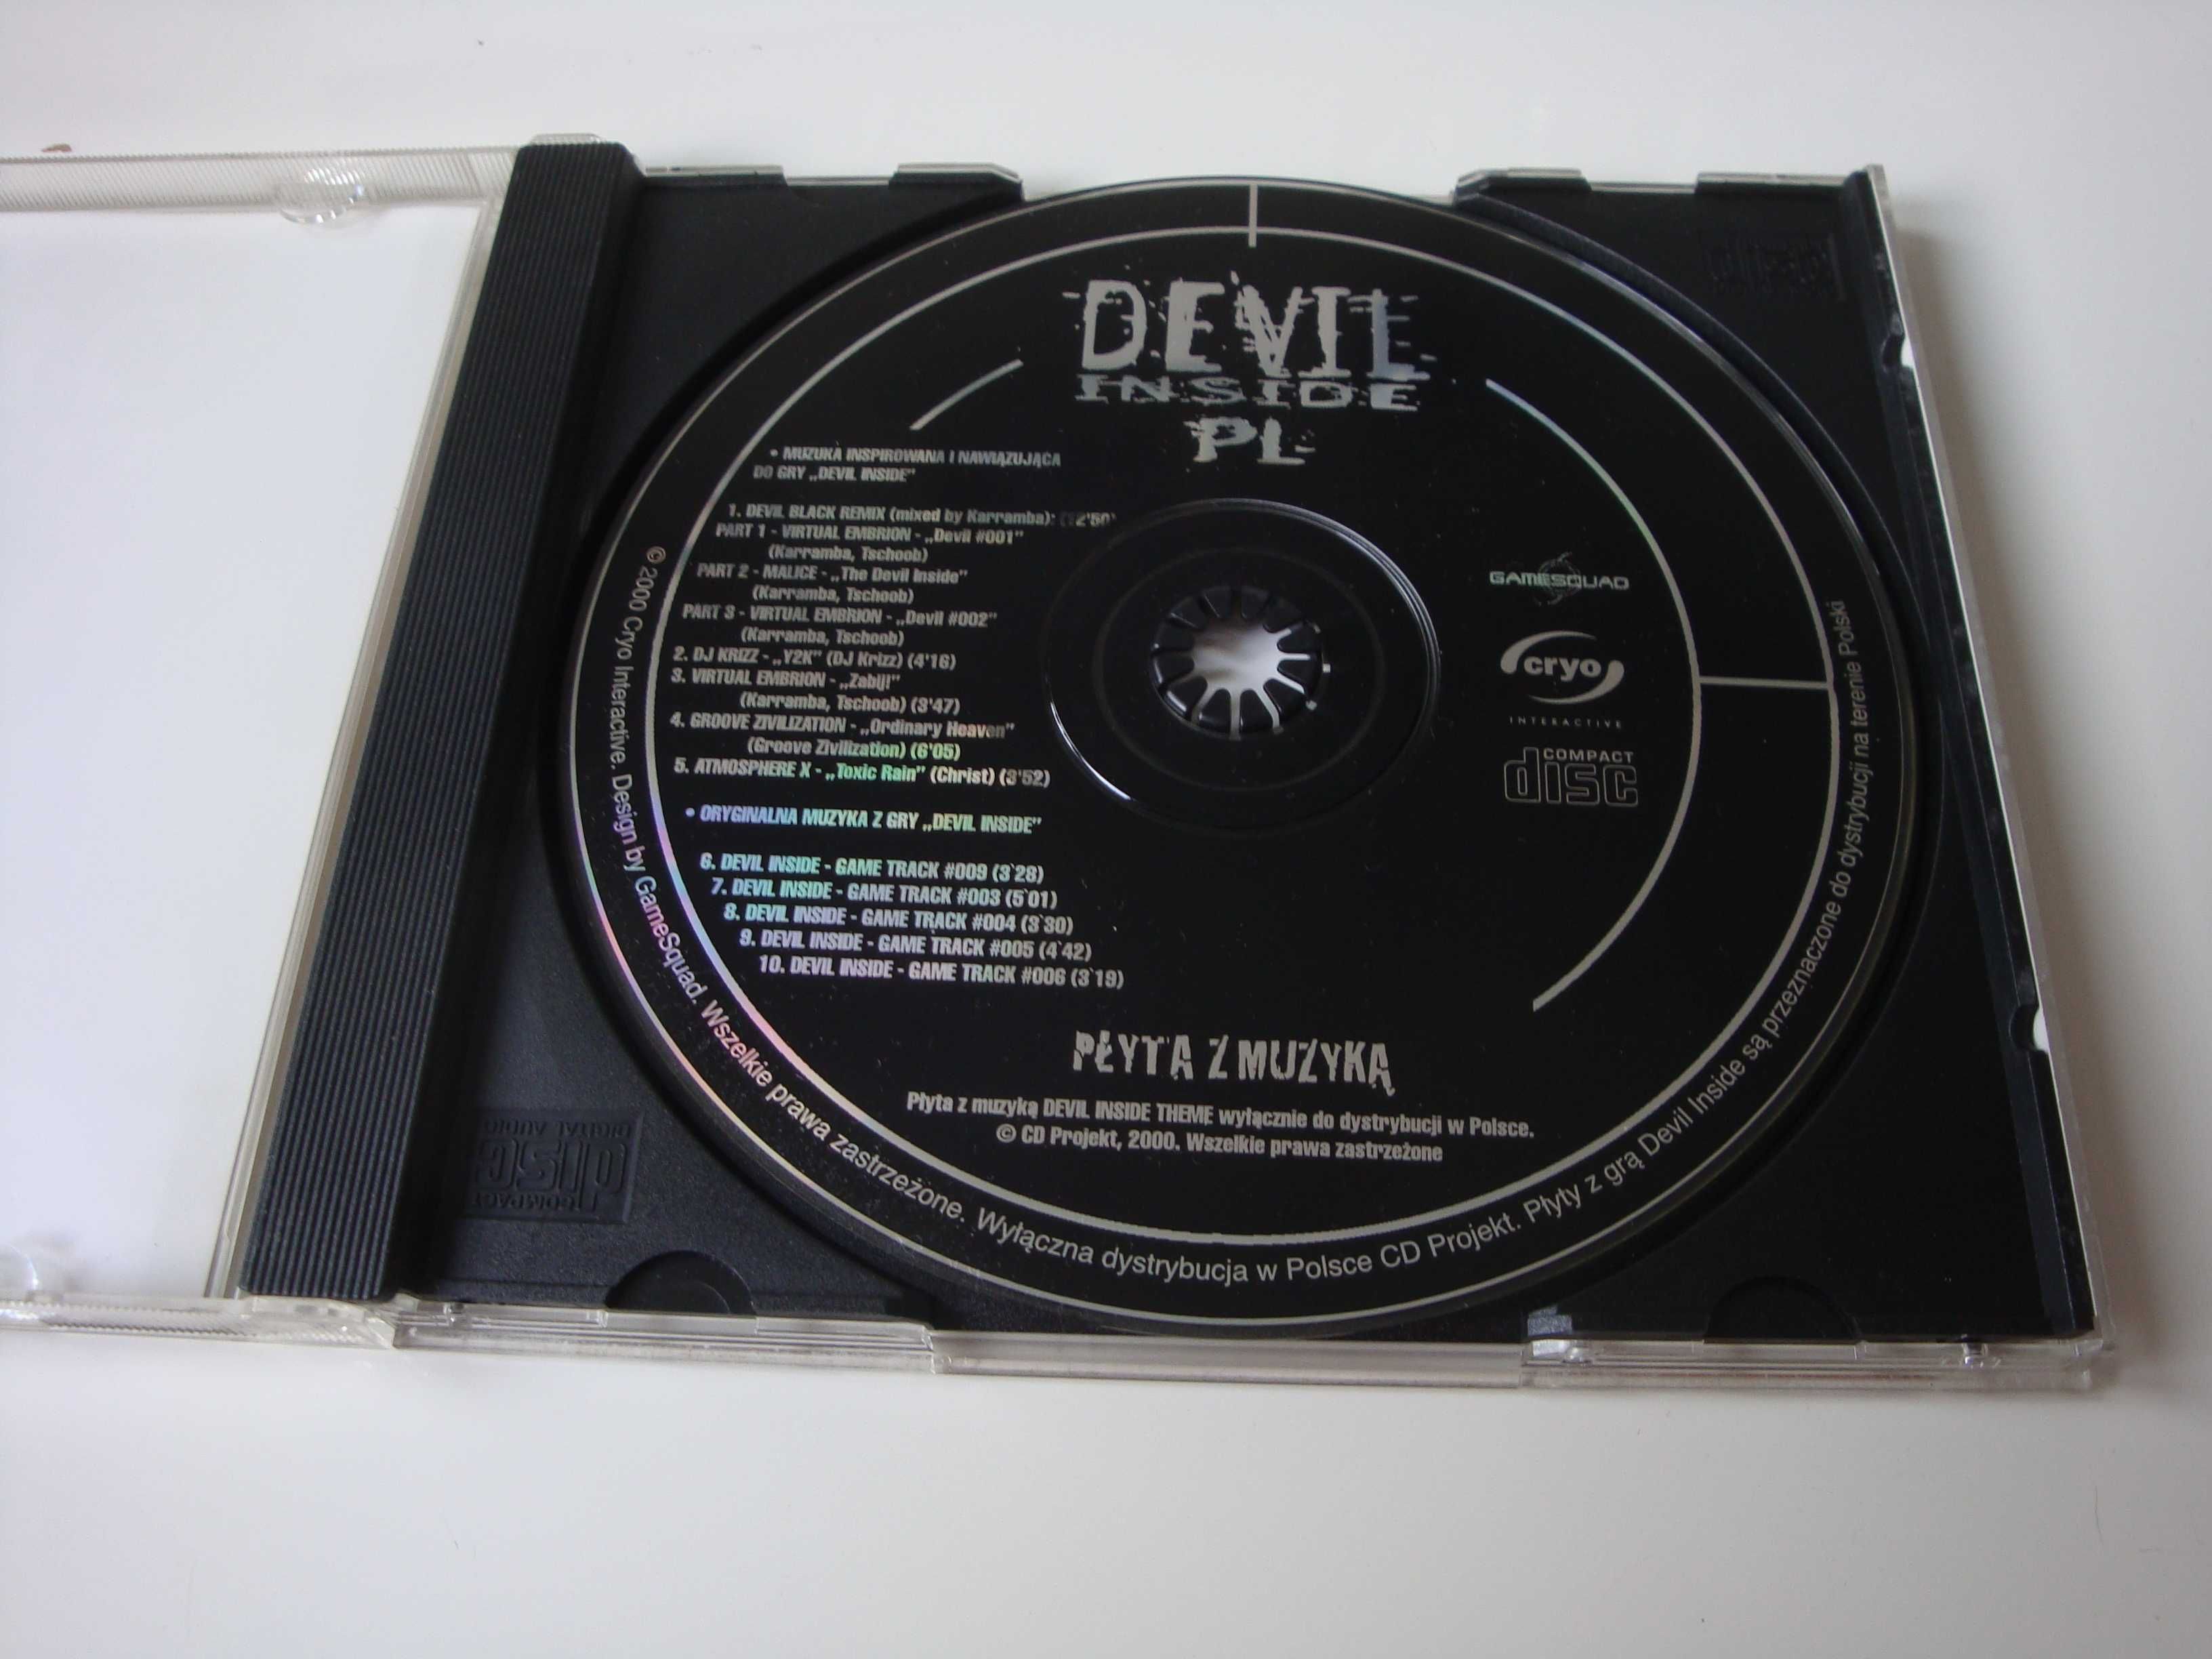 The Devil inside pl płyta z muzyką